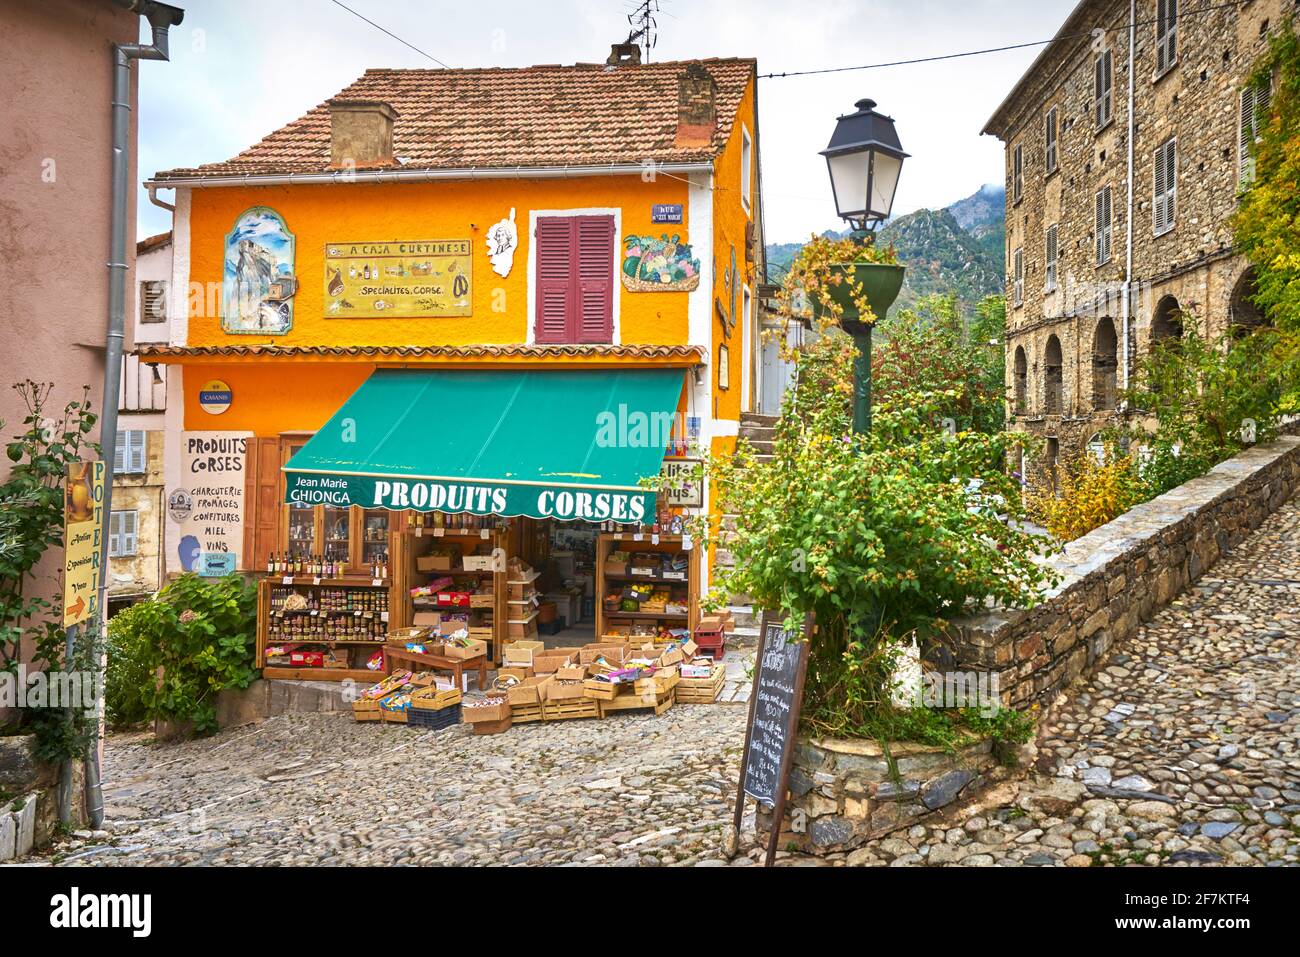 Corte, ehemalige Hauptstadt des unabhängigen Korsika, typische Architektur der Altstadt, Insel Korsika, Frankreich Stockfoto